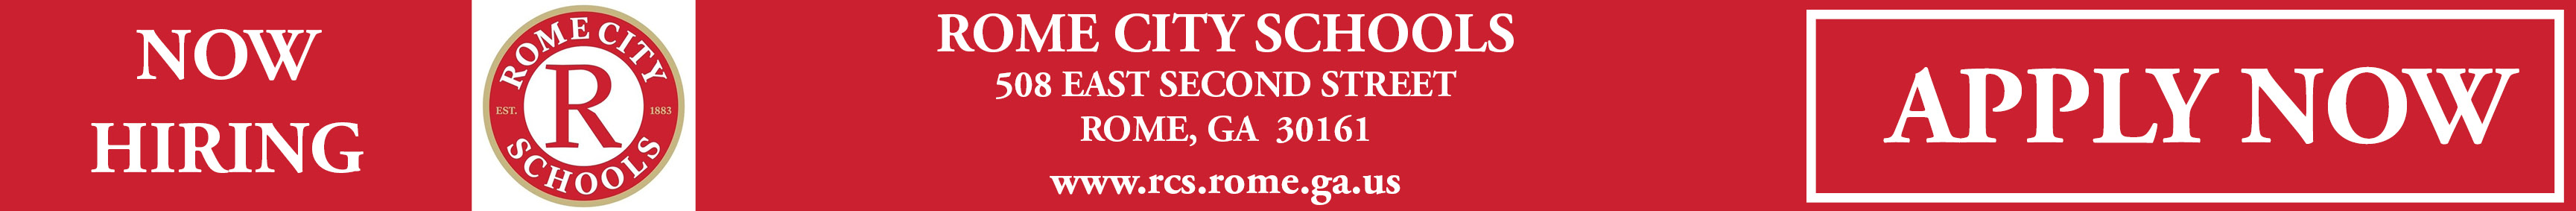 Rome City Schools